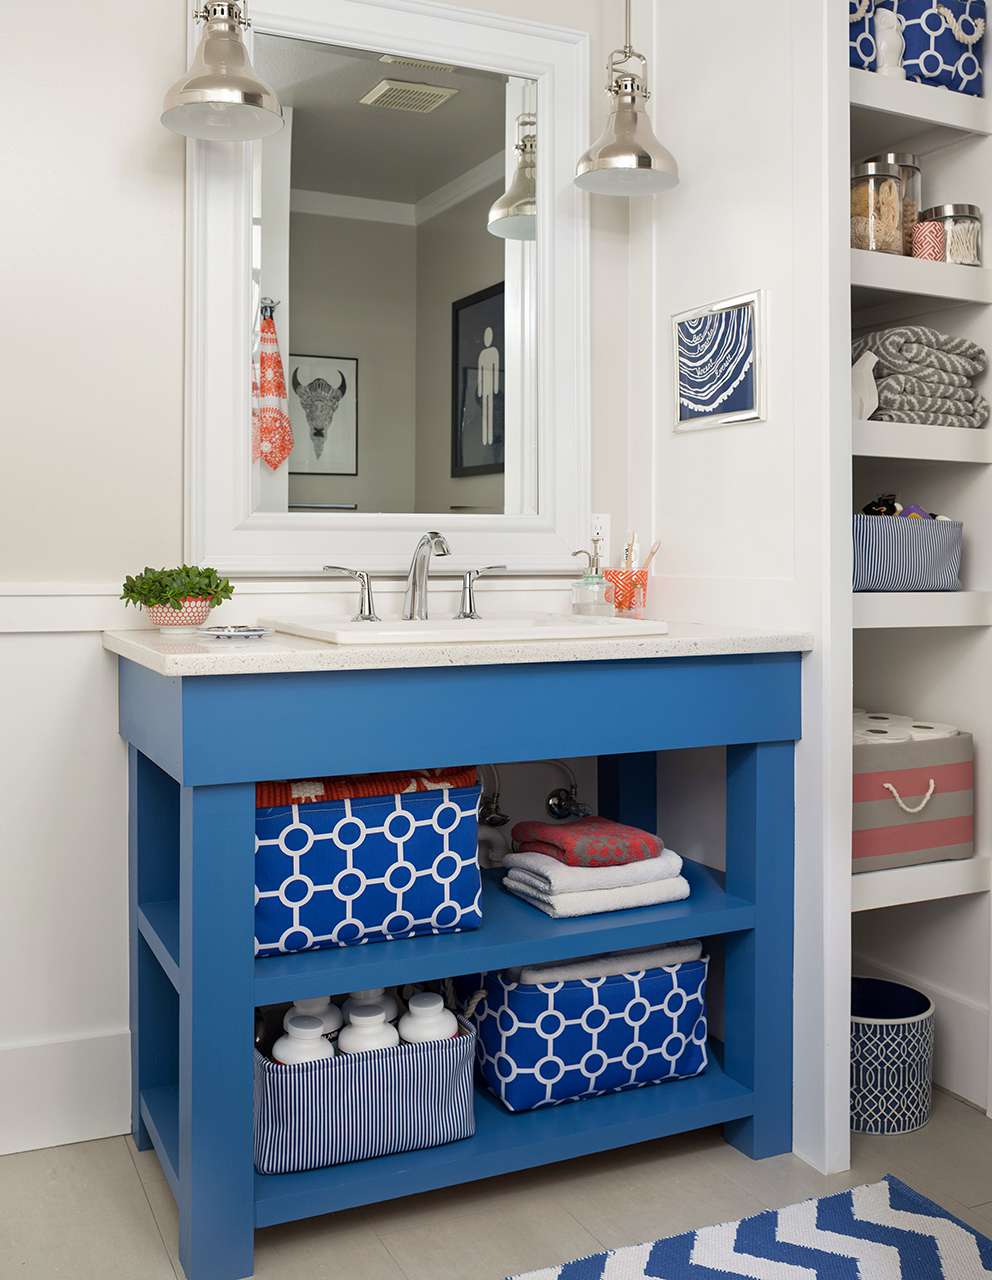 18 Diy Bathroom Vanity Ideas For Custom, Diy Double Sink Vanity Plans